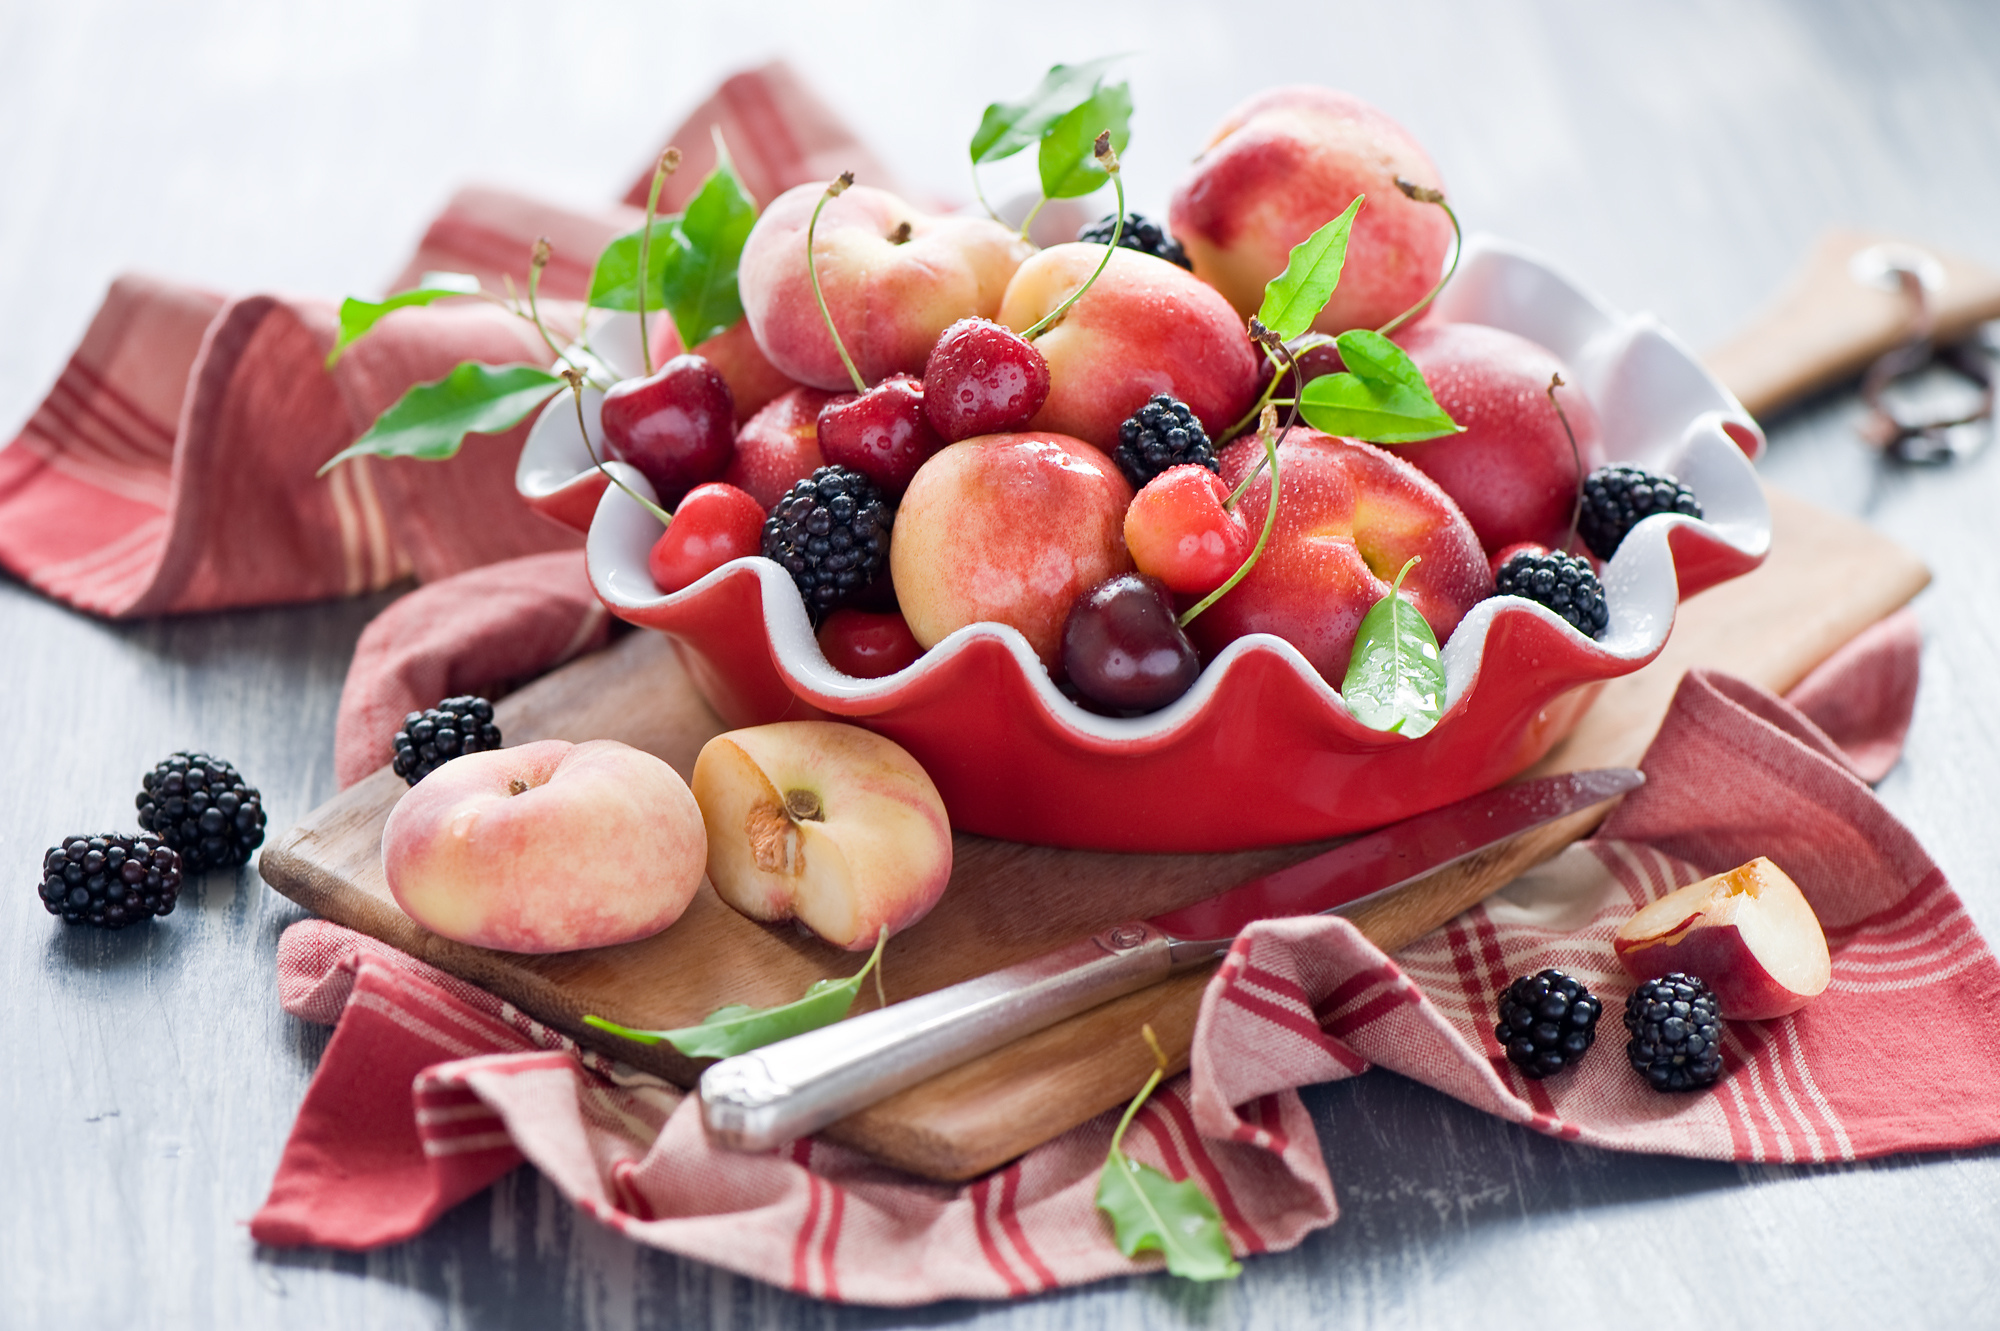 Красивые фрукты. Фрукты и ягоды на тарелке. Композиция с едой. Фруктовая тарелка с персиками. 2 6 всех фруктов составляют персики